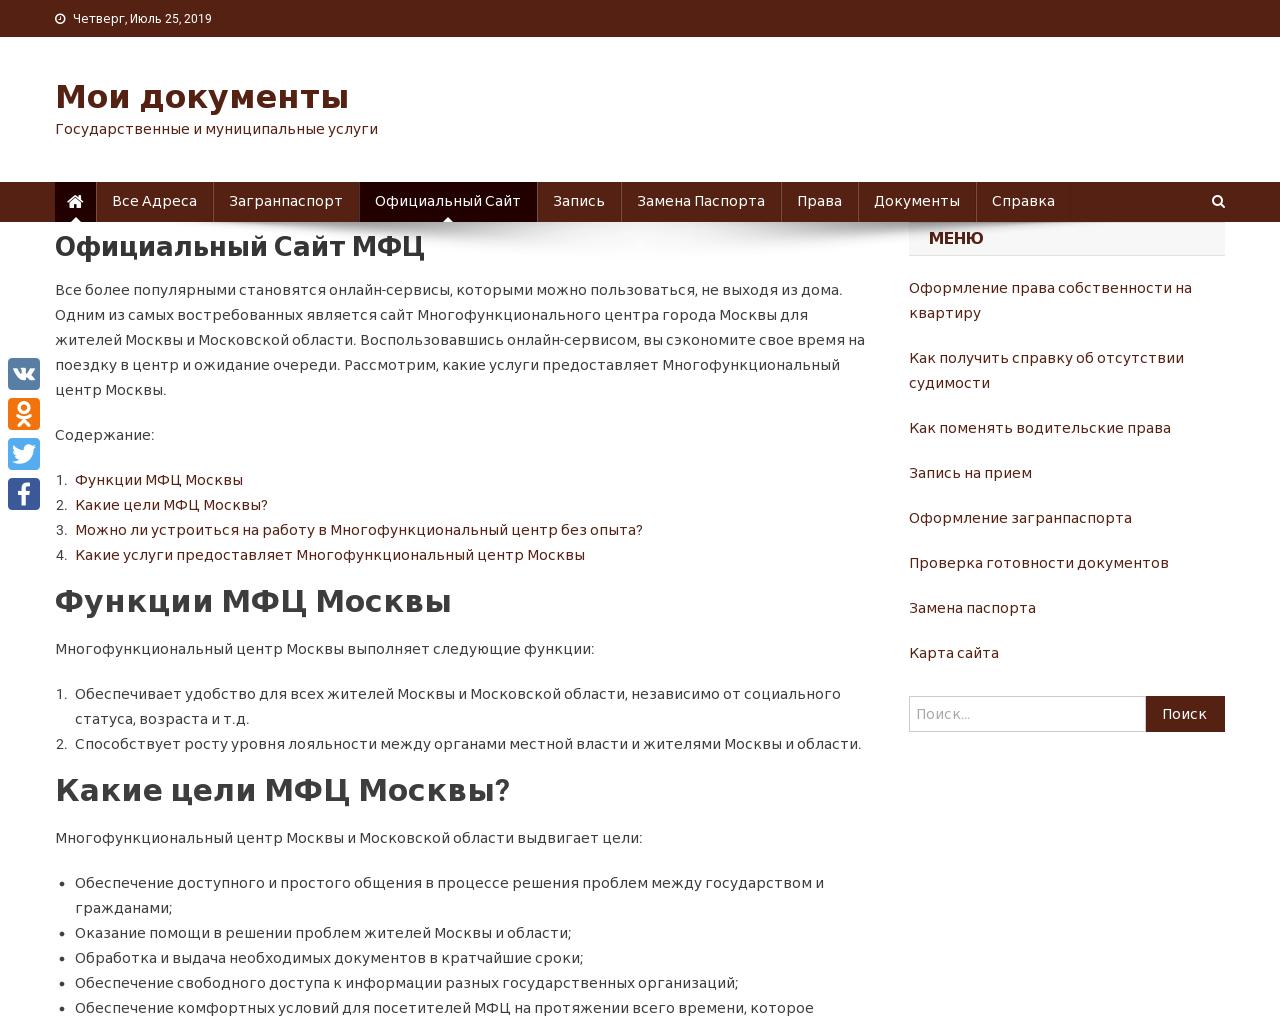 Изображение сайта mfc-site.ru в разрешении 1280x1024